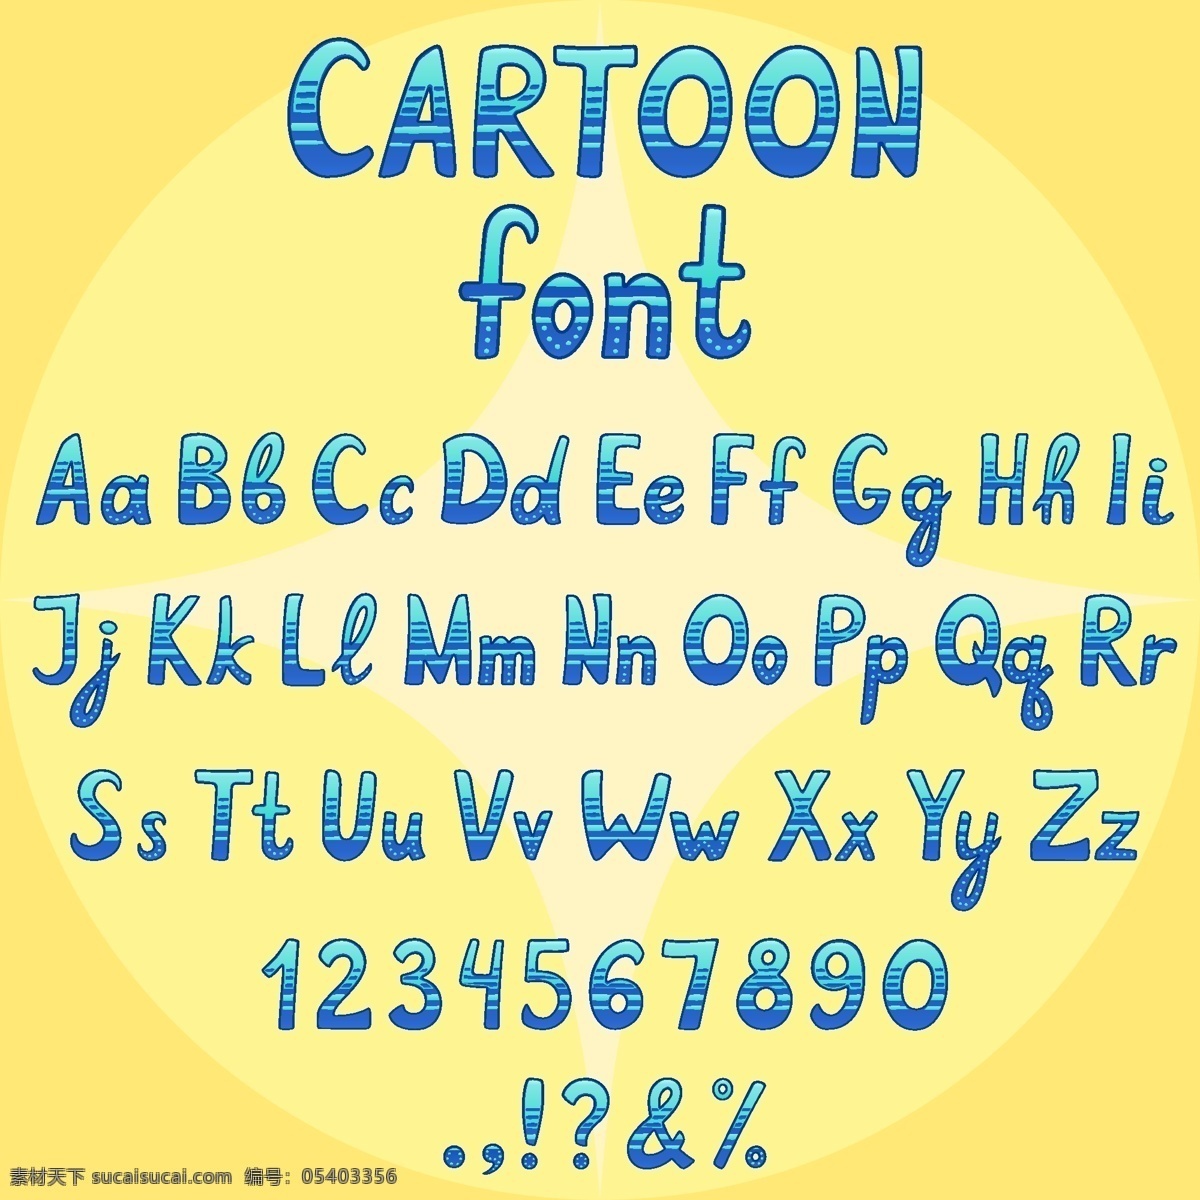 卡通字体 蓝色 人物 卡通 排版 可爱 数量 字体 字母 文字 字 词 abc 条纹 明亮 错字 类型 华丽 印刷